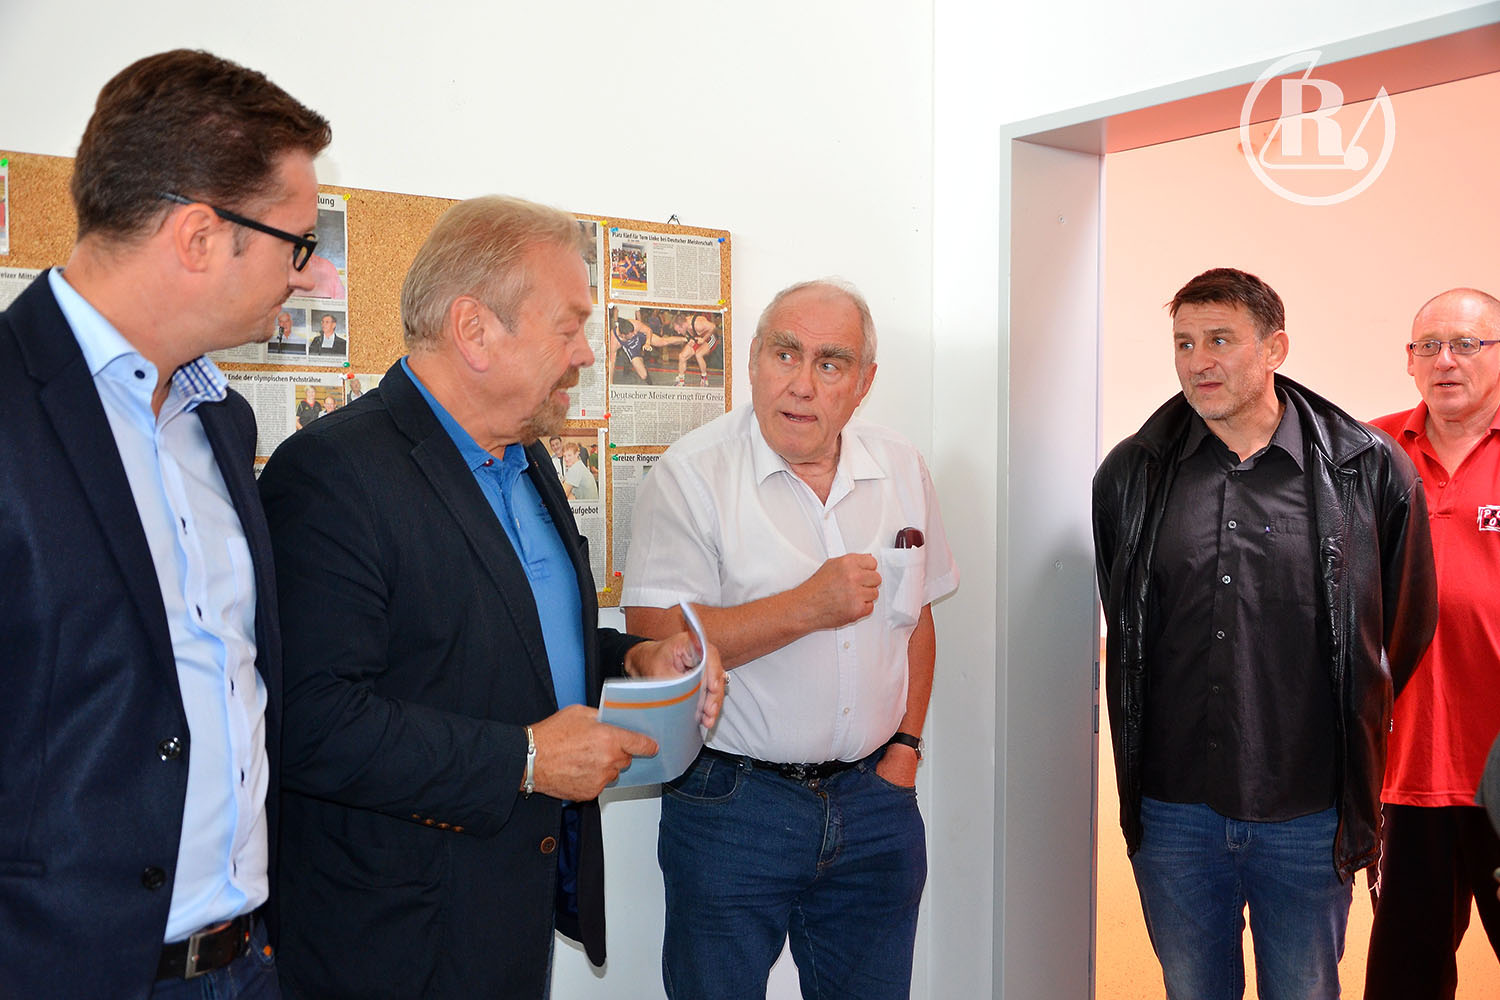 Sommertour: Christian Tischner (CDU) besucht Greizer Zweifeldersporthalle